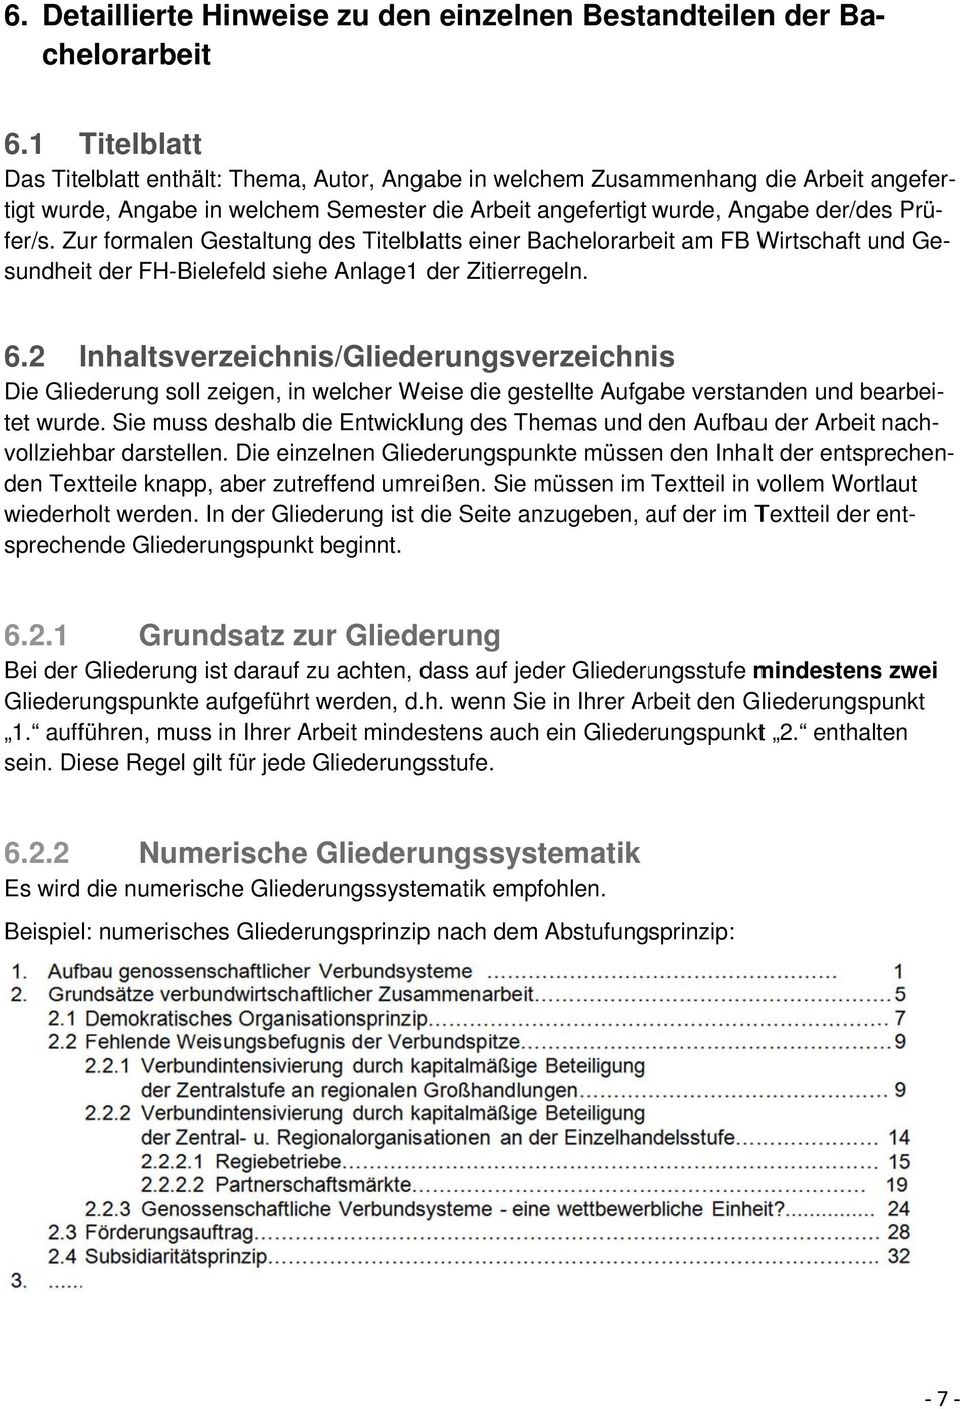 fer/s. Zur formalen Gestaltung des Titelblatts einer Bachelorarb beit am FB Wirtschaft sundheit der FH-Bielefeld siehe Anlage1 der Zitierregeln. 6.